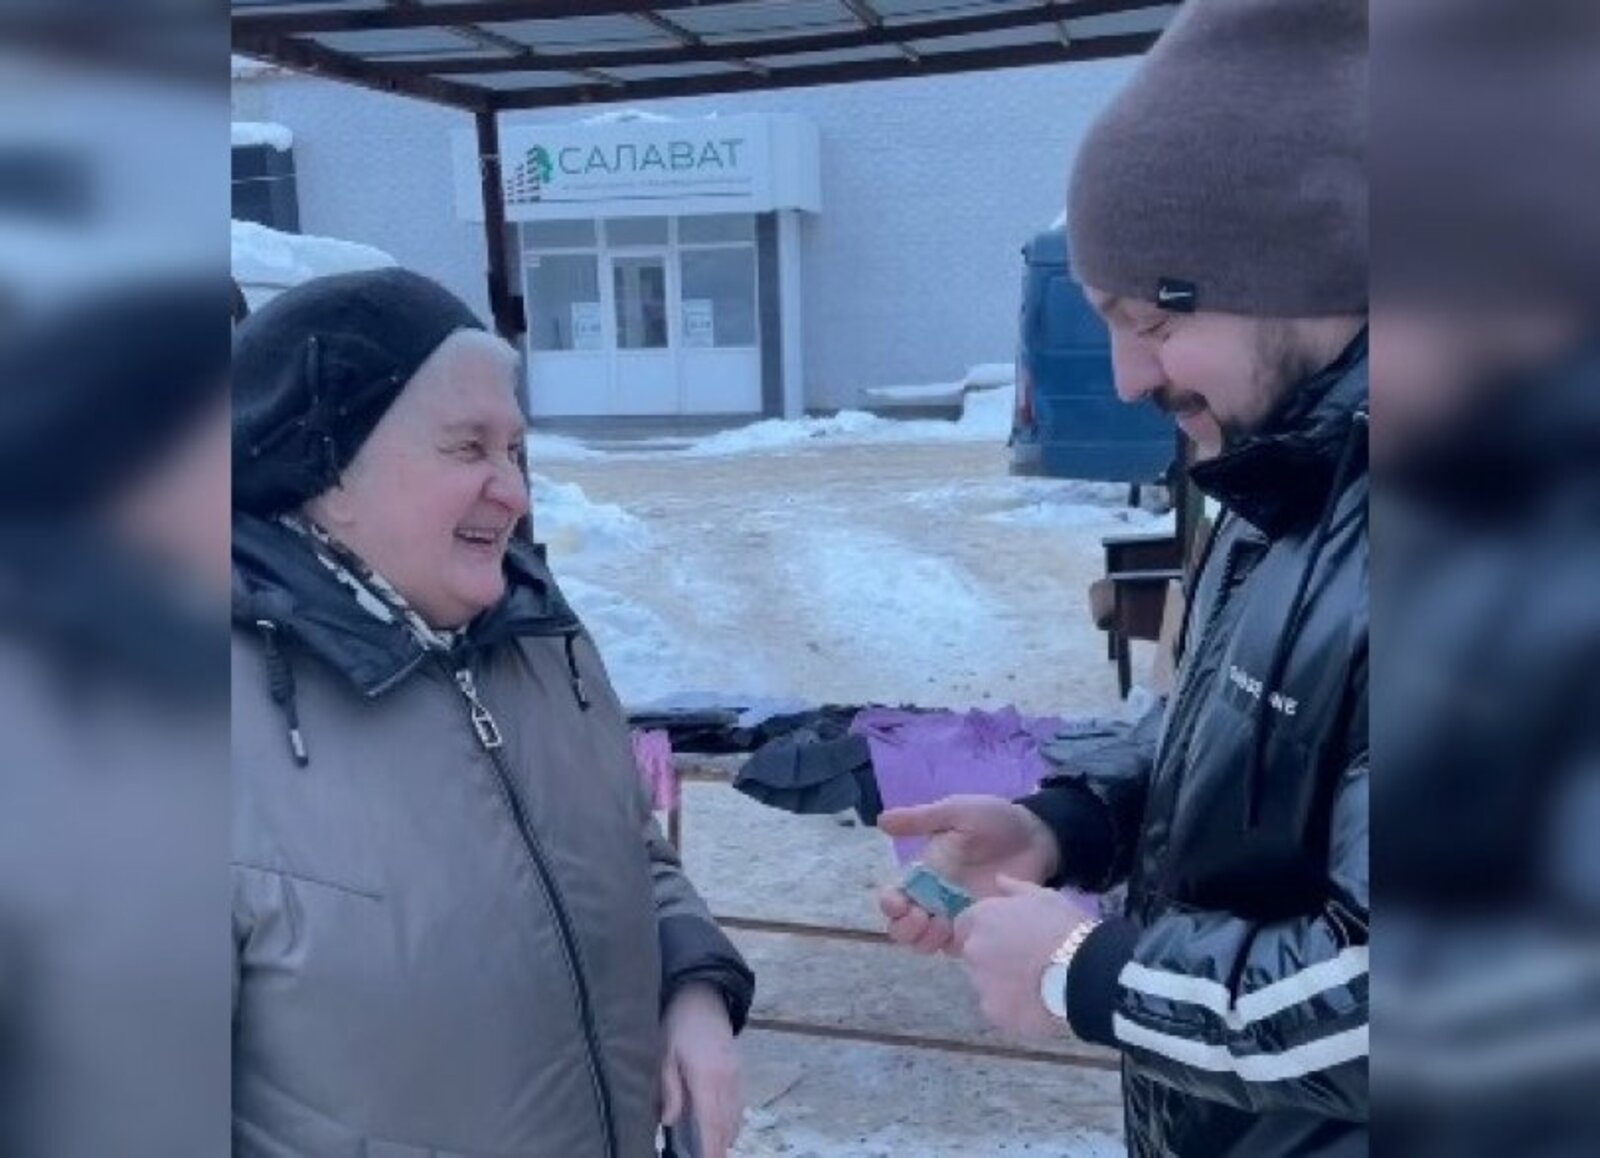 Житель Башкирии устроил благотворительную акцию для пенсионеров и раздавал им деньги